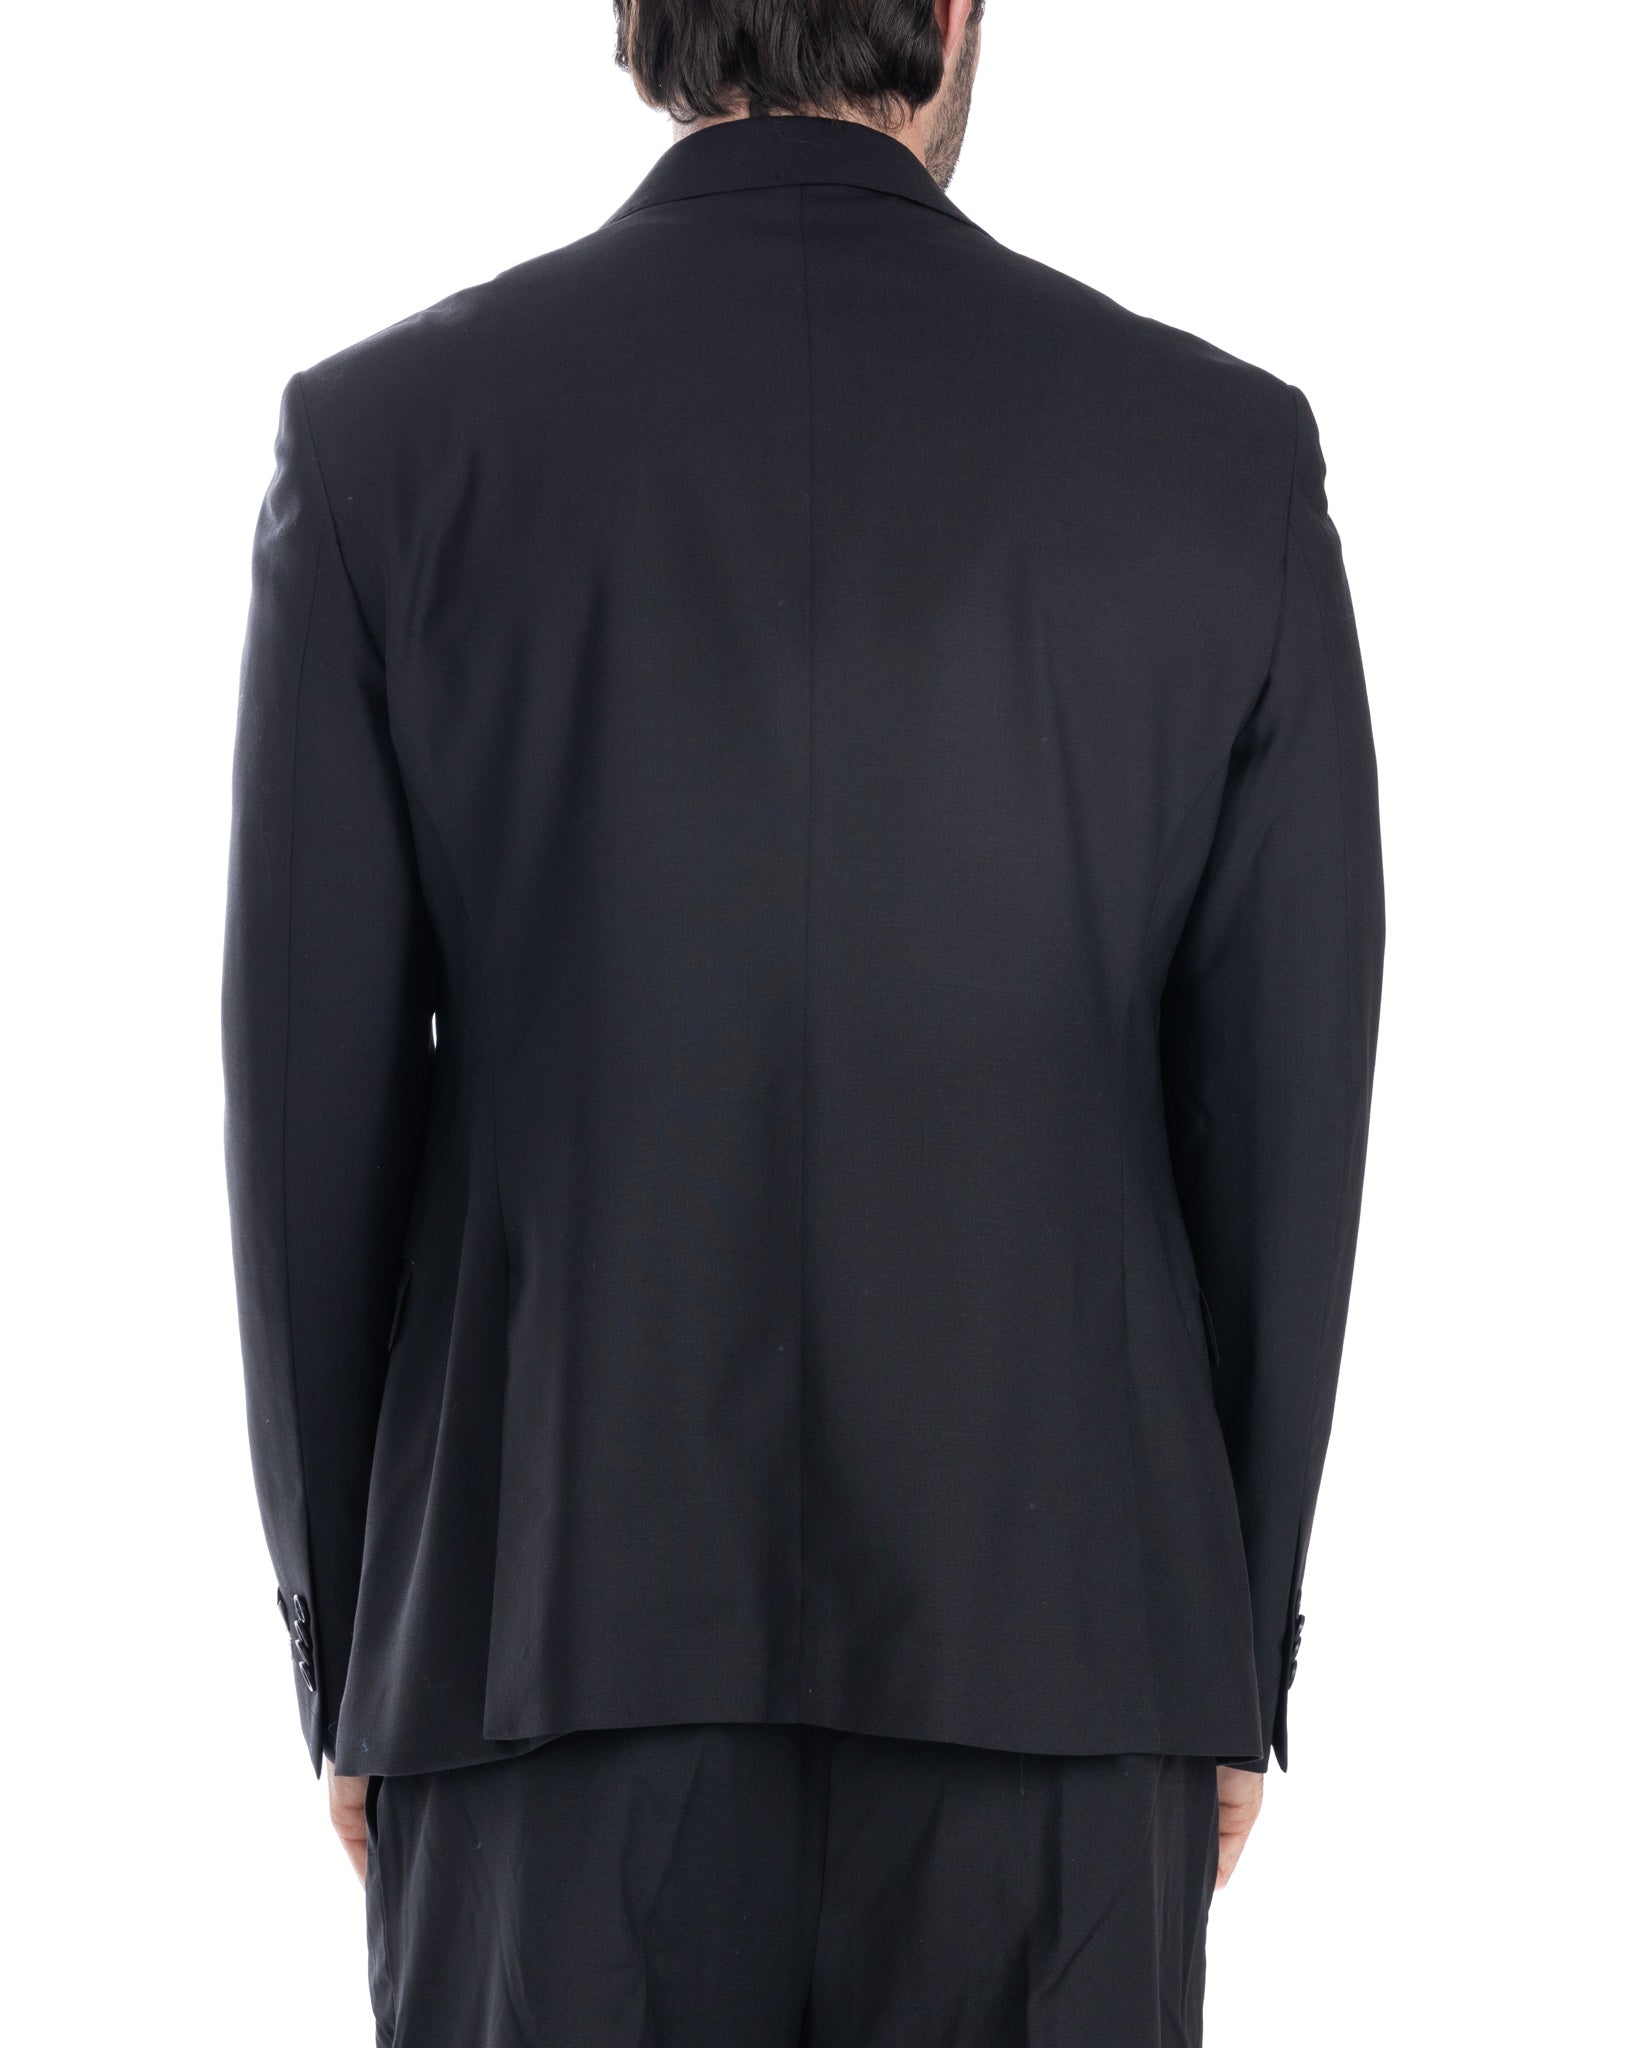 Brooklyn - giacca doppiopetto nera in lana